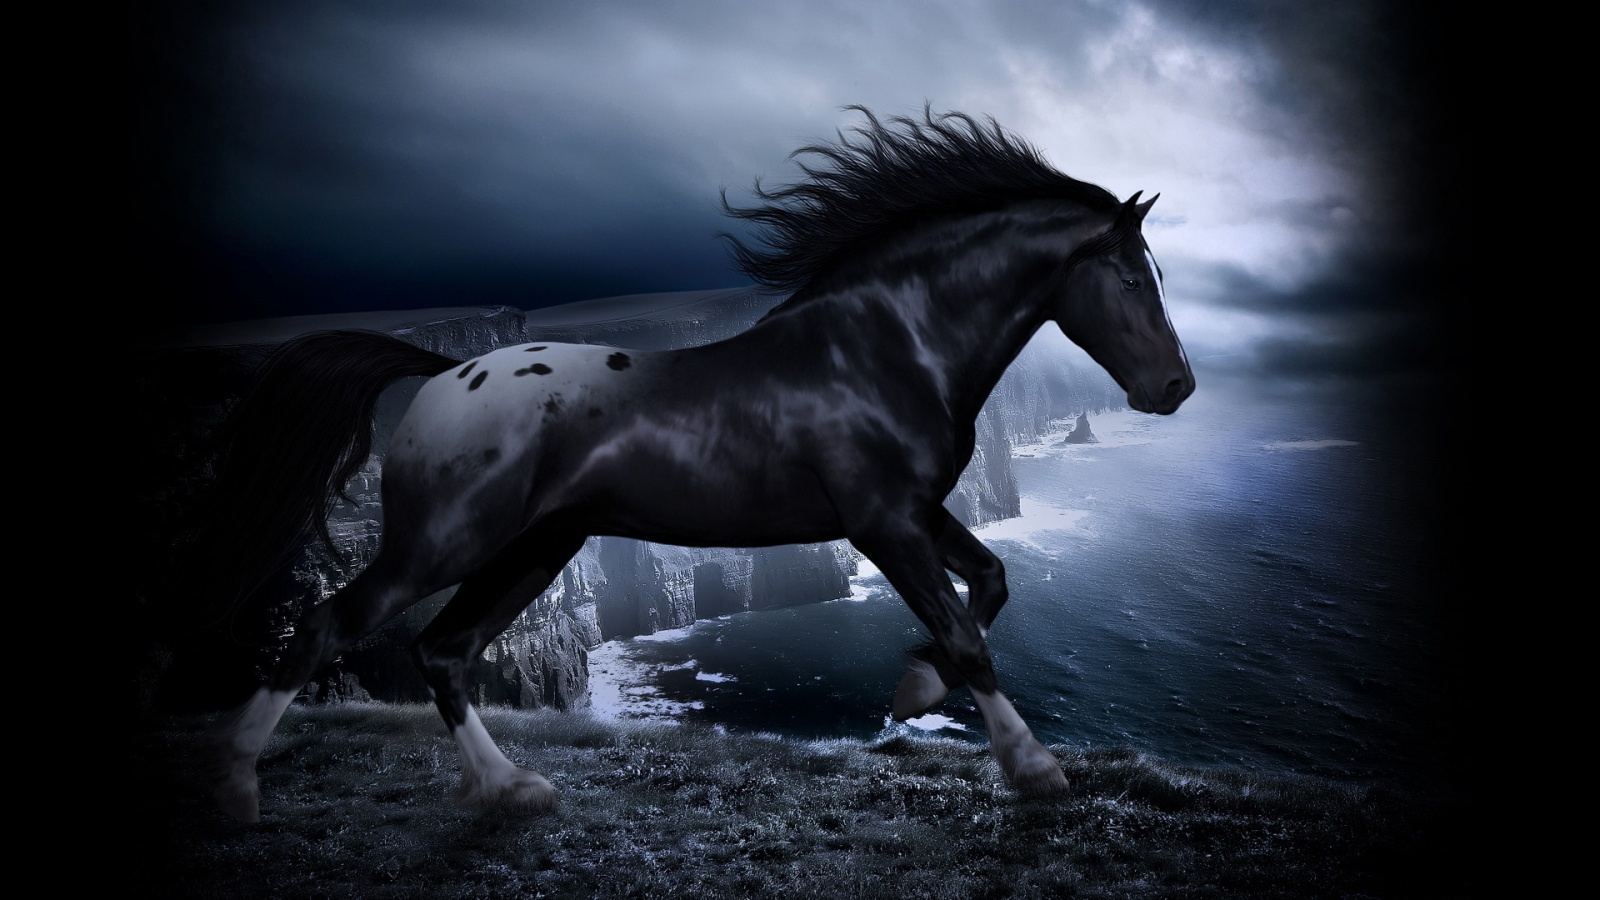 Download wallpaper: Black horse 1080x1920